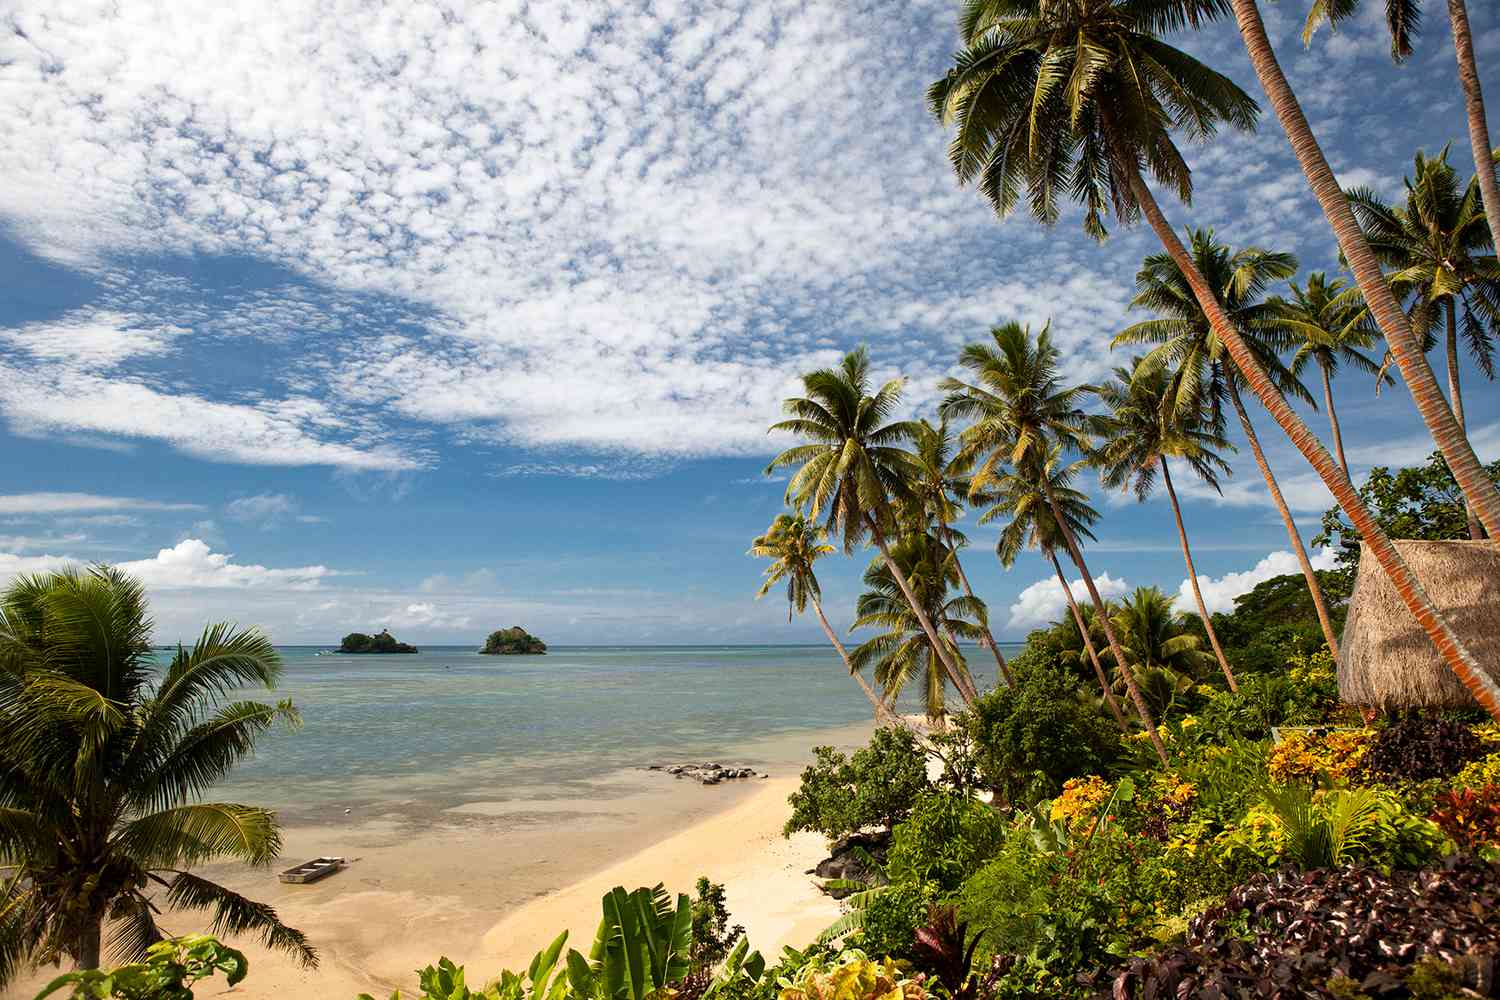 Propriété en front de mer sur l'île de Taveuni, Fidji, Mélanésie.